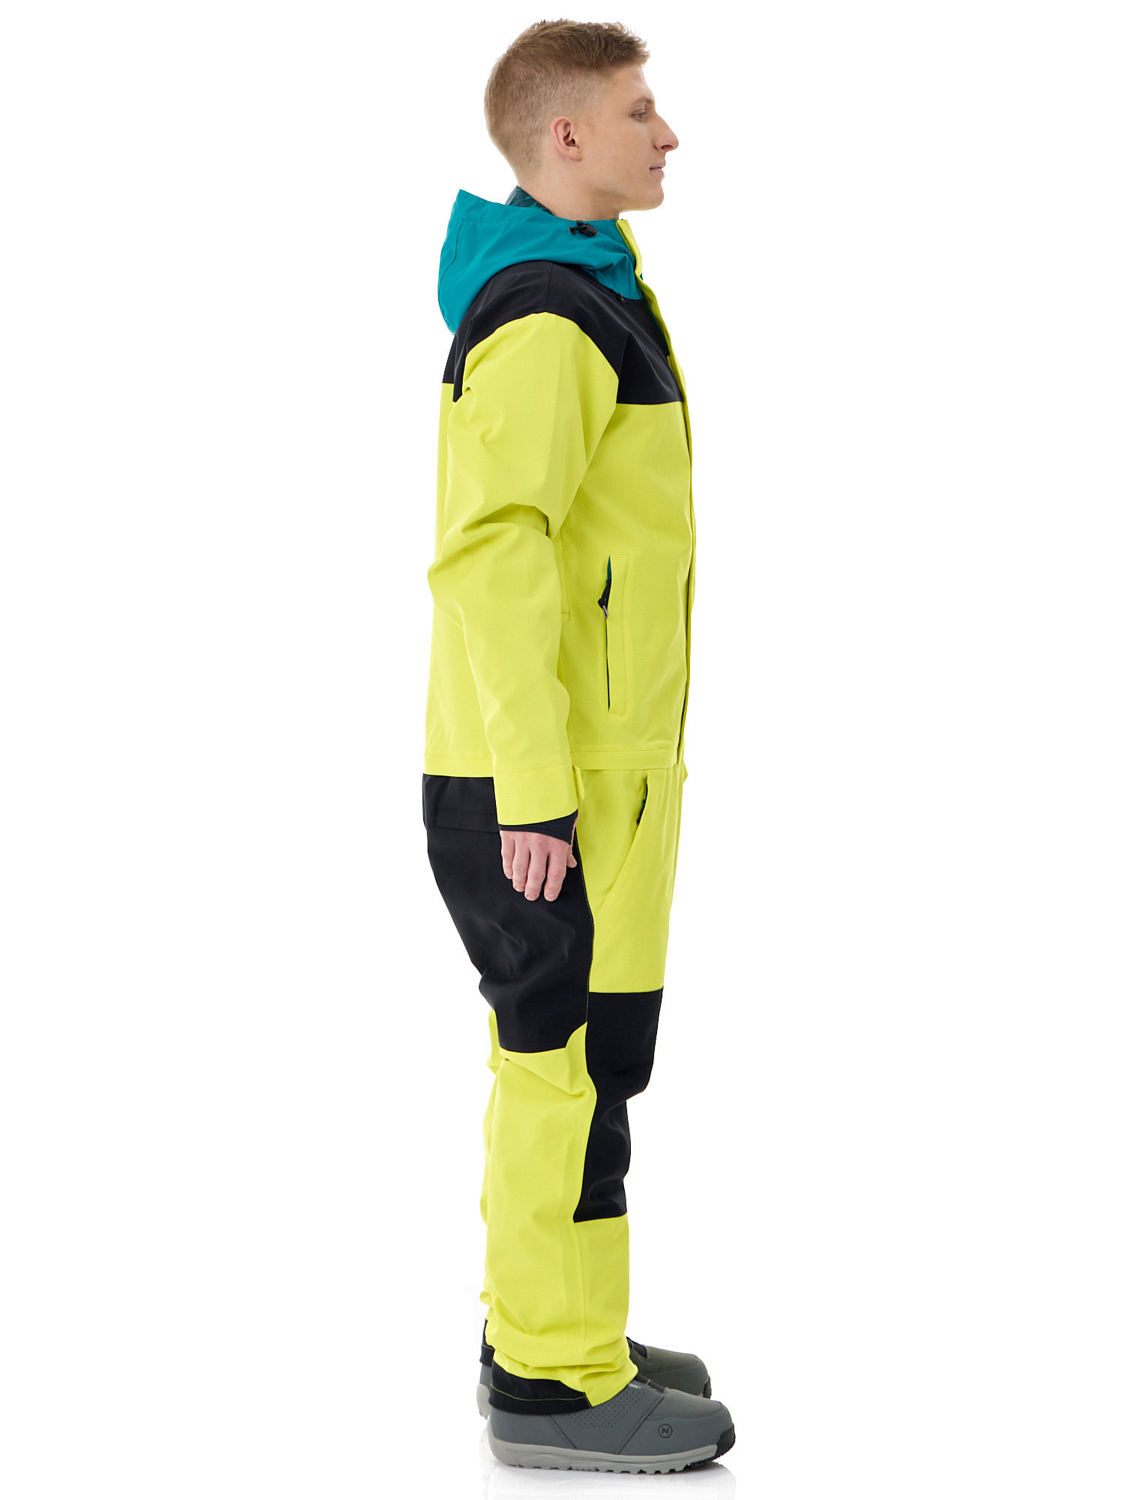 Комбинезон сноубордический AIRBLASTER Stretch Freedom Suit Safety